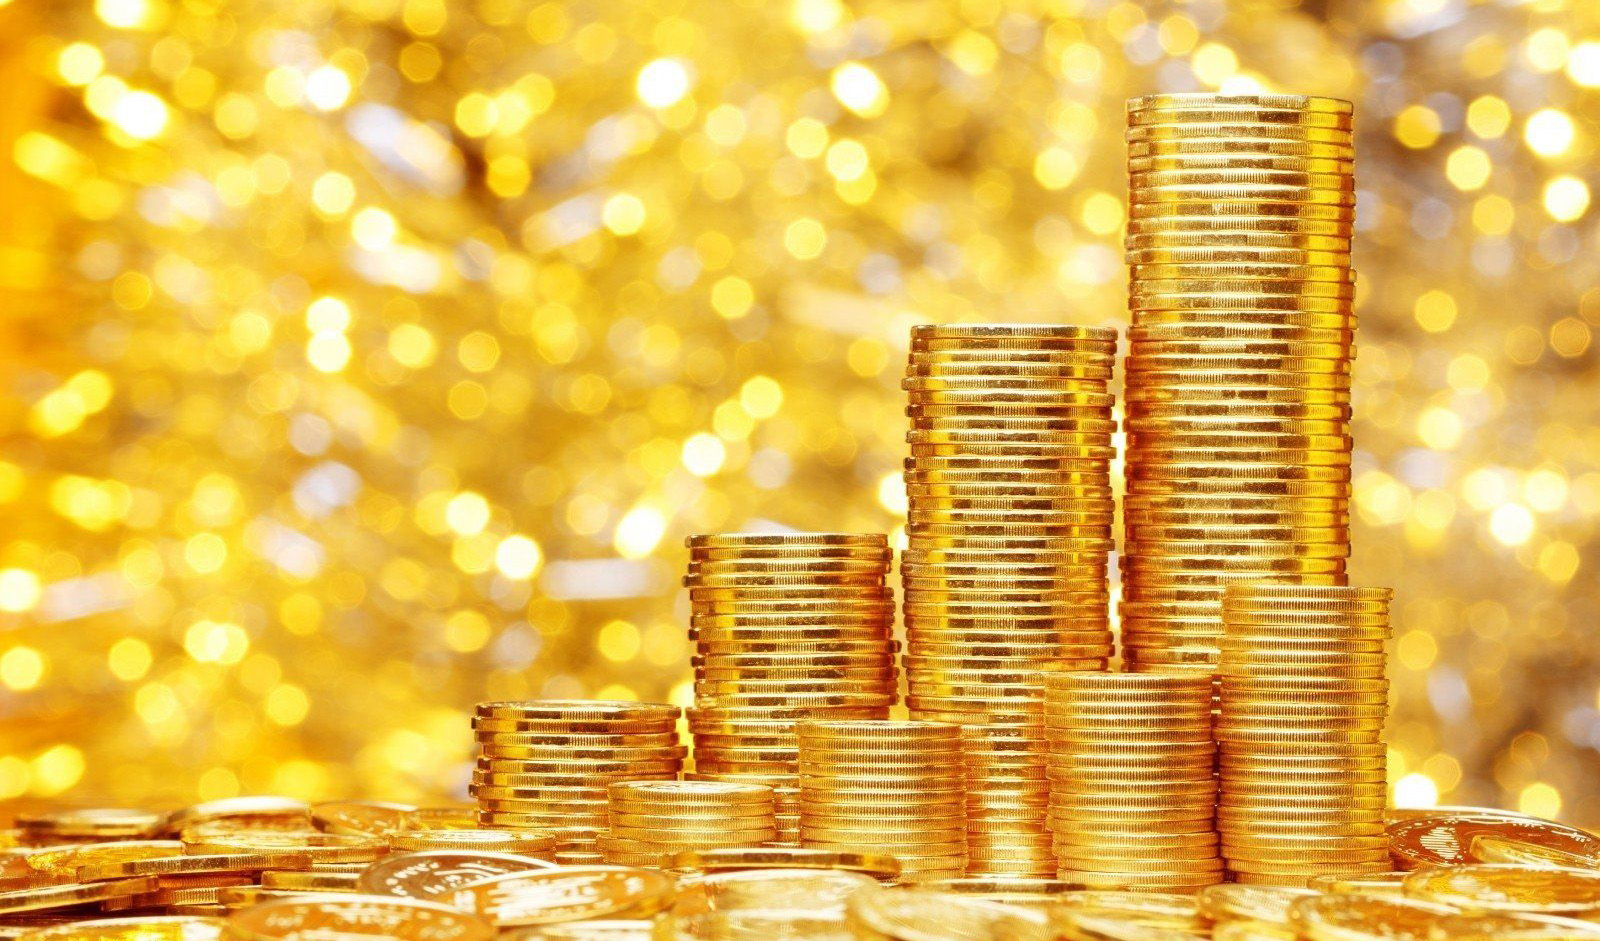 ثبات و آرامش بازار طلا در هفته دوم تیرماه/ حباب سکه ۵.۵ میلیون تومان است